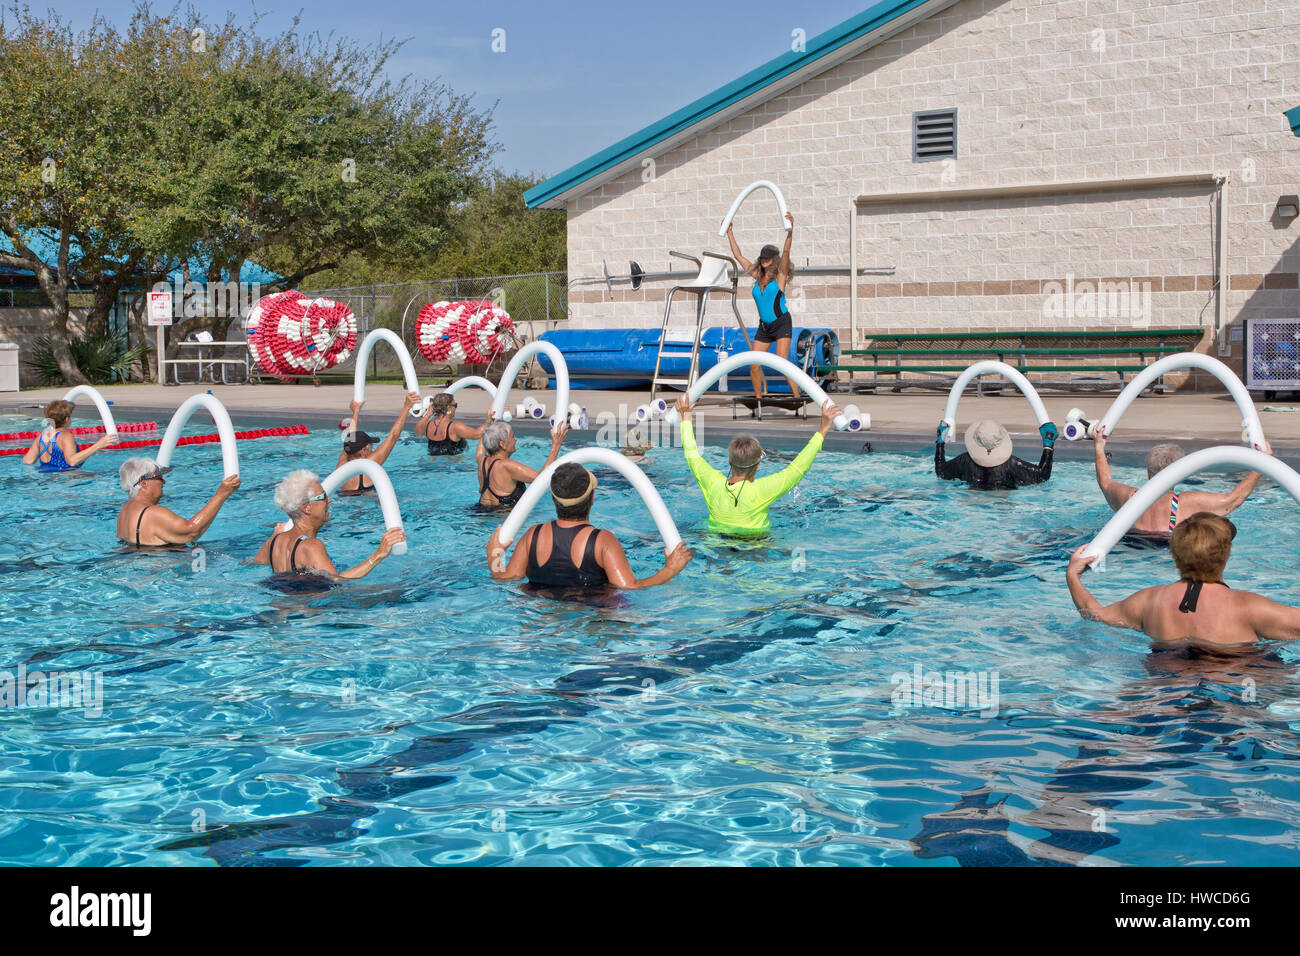 Gruppe von Frauen, Wasser-Aerobic-Kurs teilnehmen, Ausbilder demonstriert, mit Styropor "Wasser Nudel", Outdoor-beheizter Pool, Rockport, Texas. Stockfoto